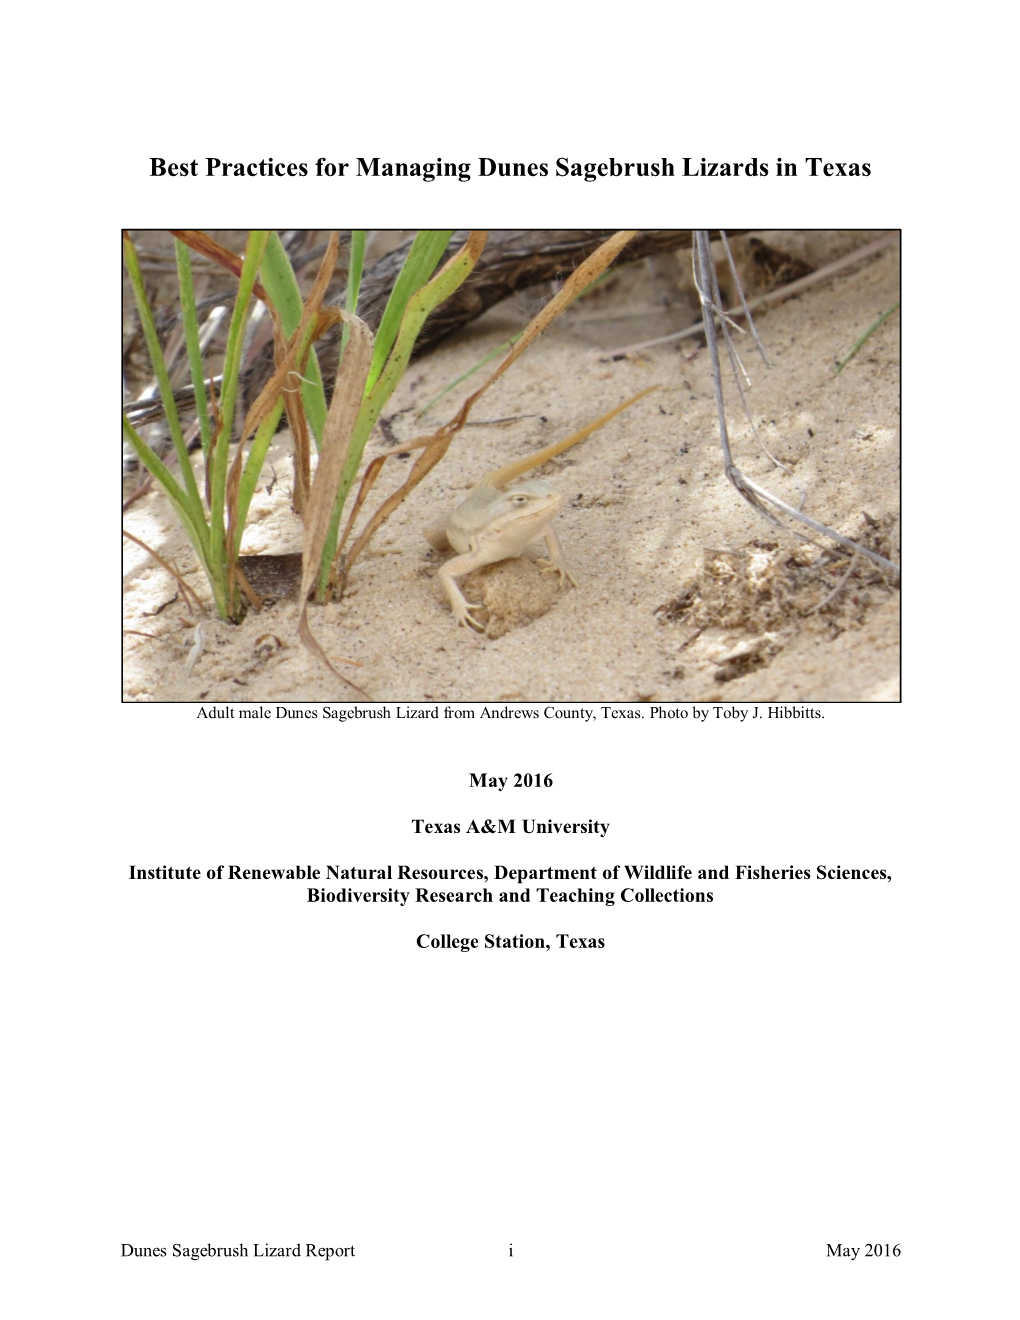 Best Practices for Managing Dunes Sagebrush Lizards in Texas